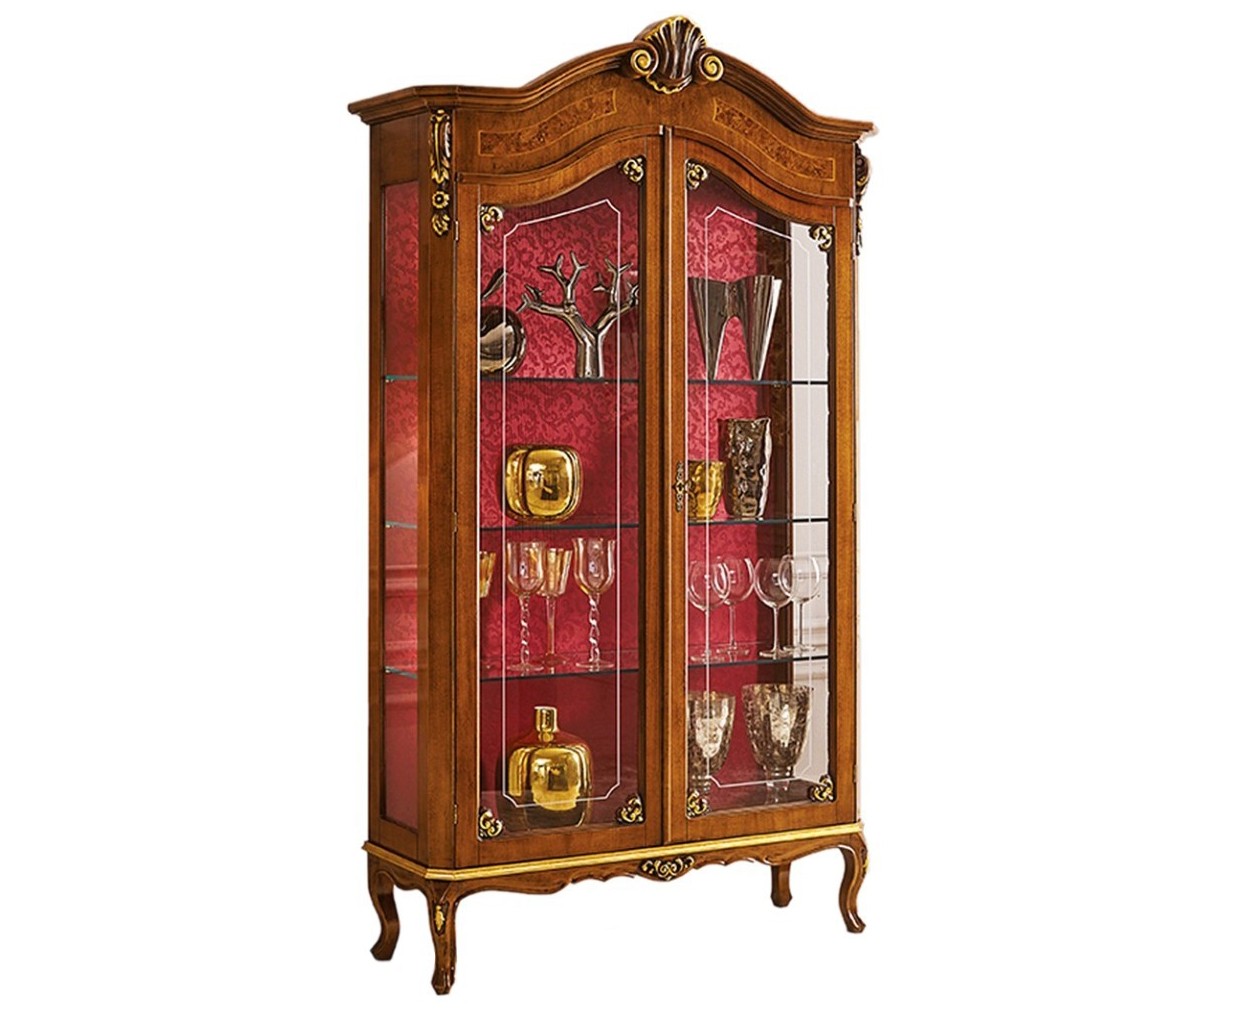 Estila Luxusní klasická prosklená dvoudveřová vitrína Clasica z dřevěného masivu s barokní výzdobou a chippendale nožičkami 210 cm